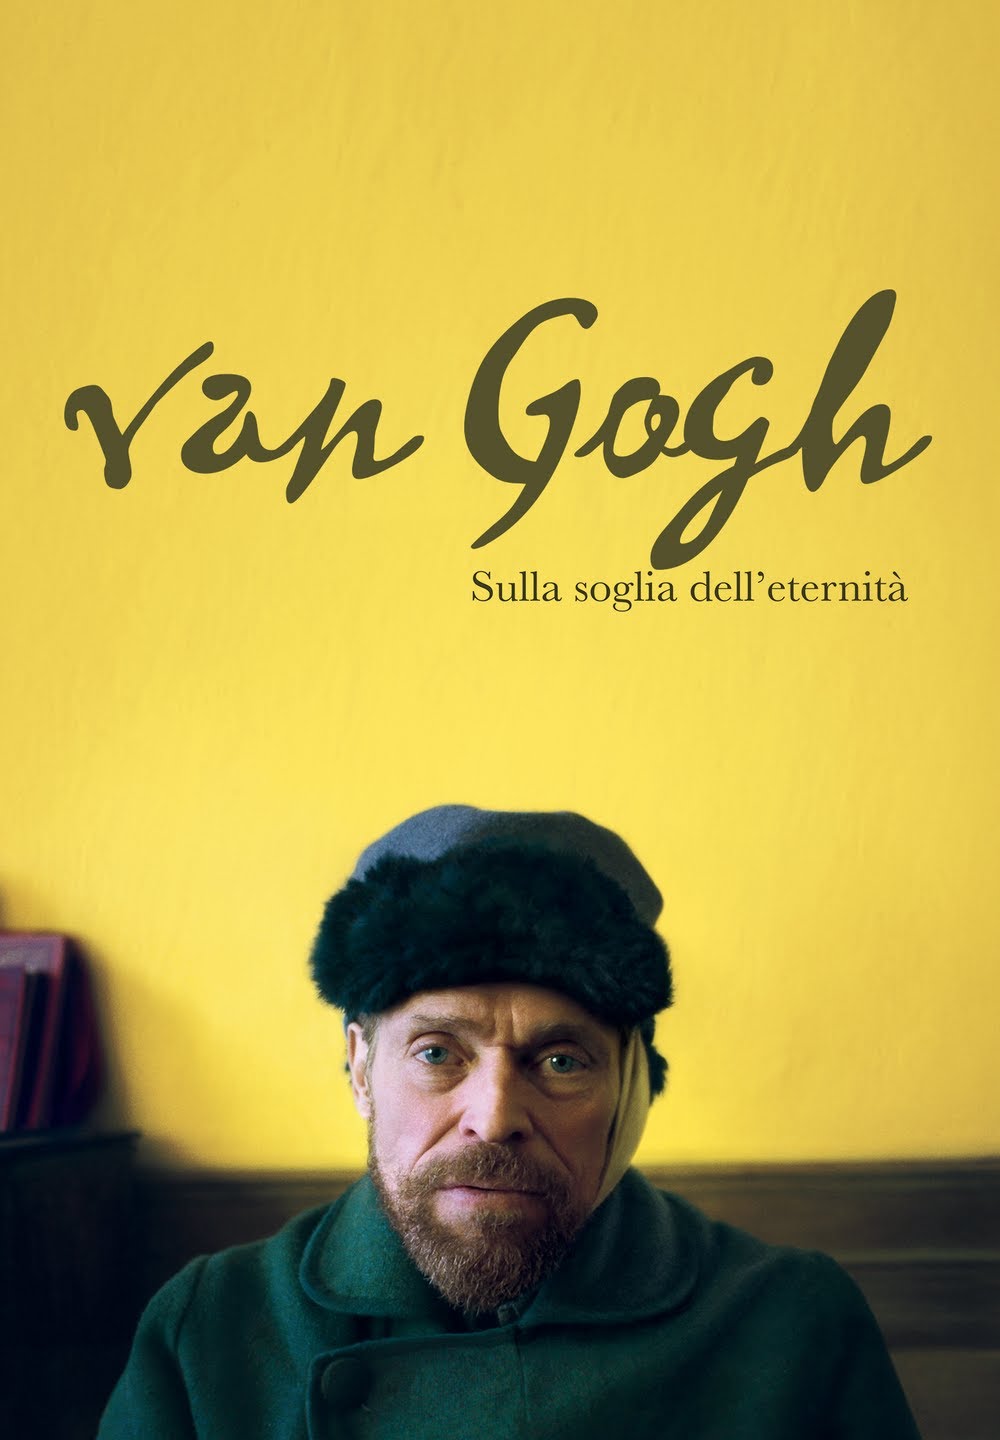 Van Gogh – Sulla soglia dell’eternità [HD] (2019)